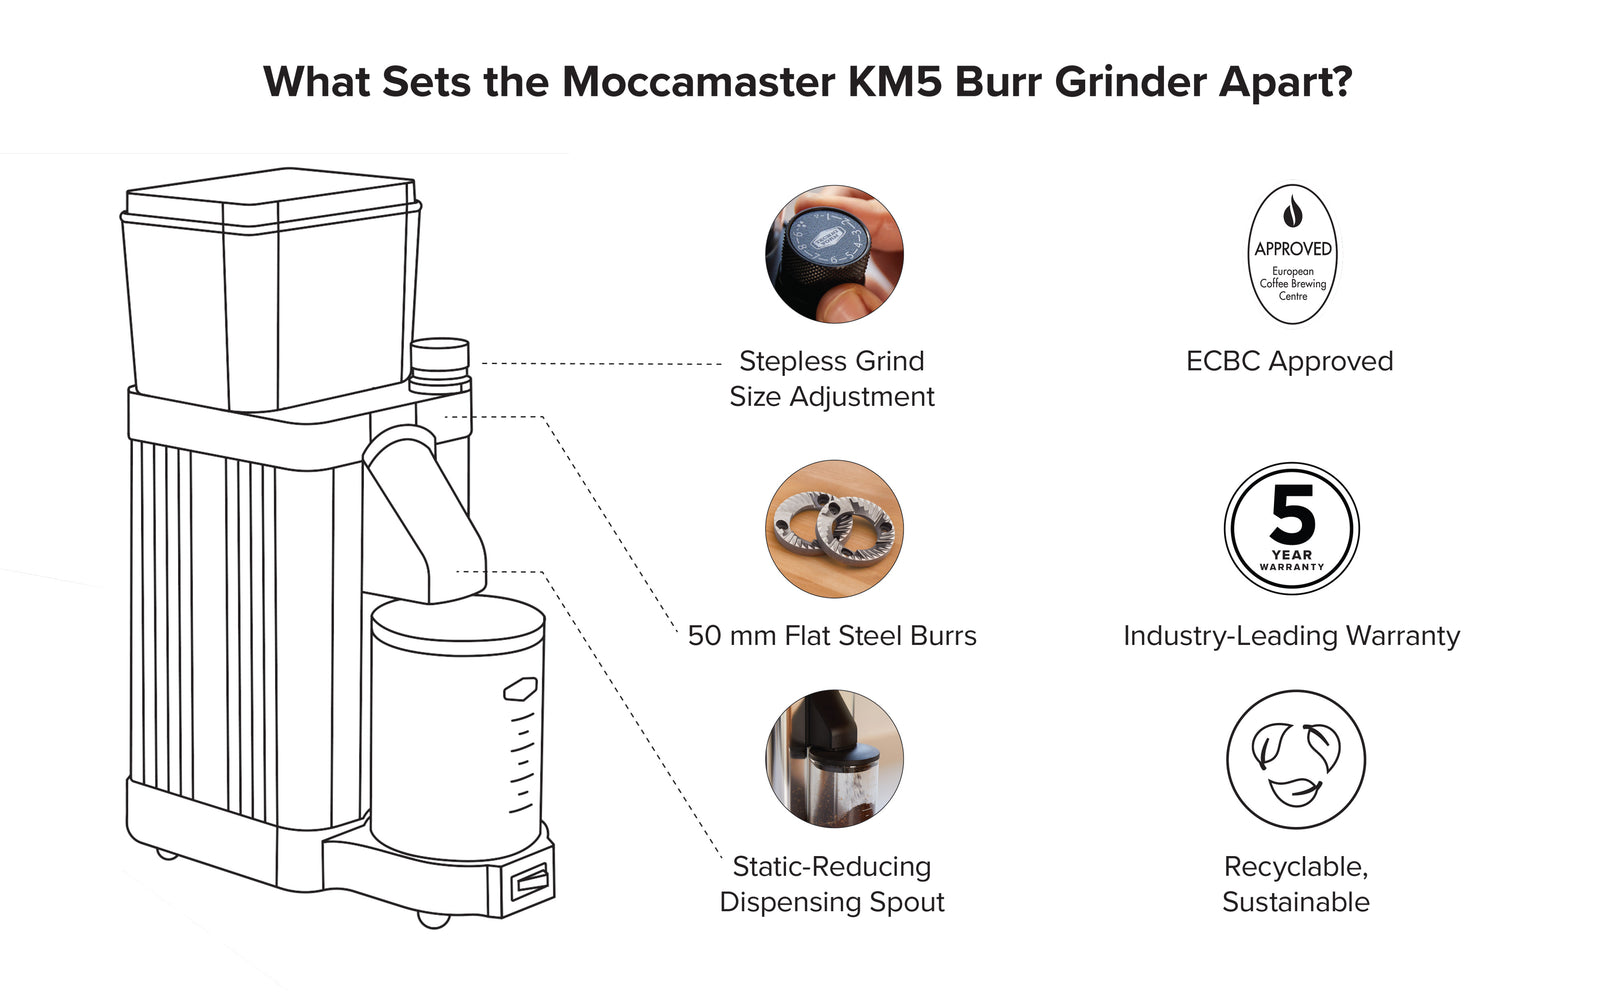 High End Coffee Grinder: Moccamaster KM5 Burr Grinder Matte Black